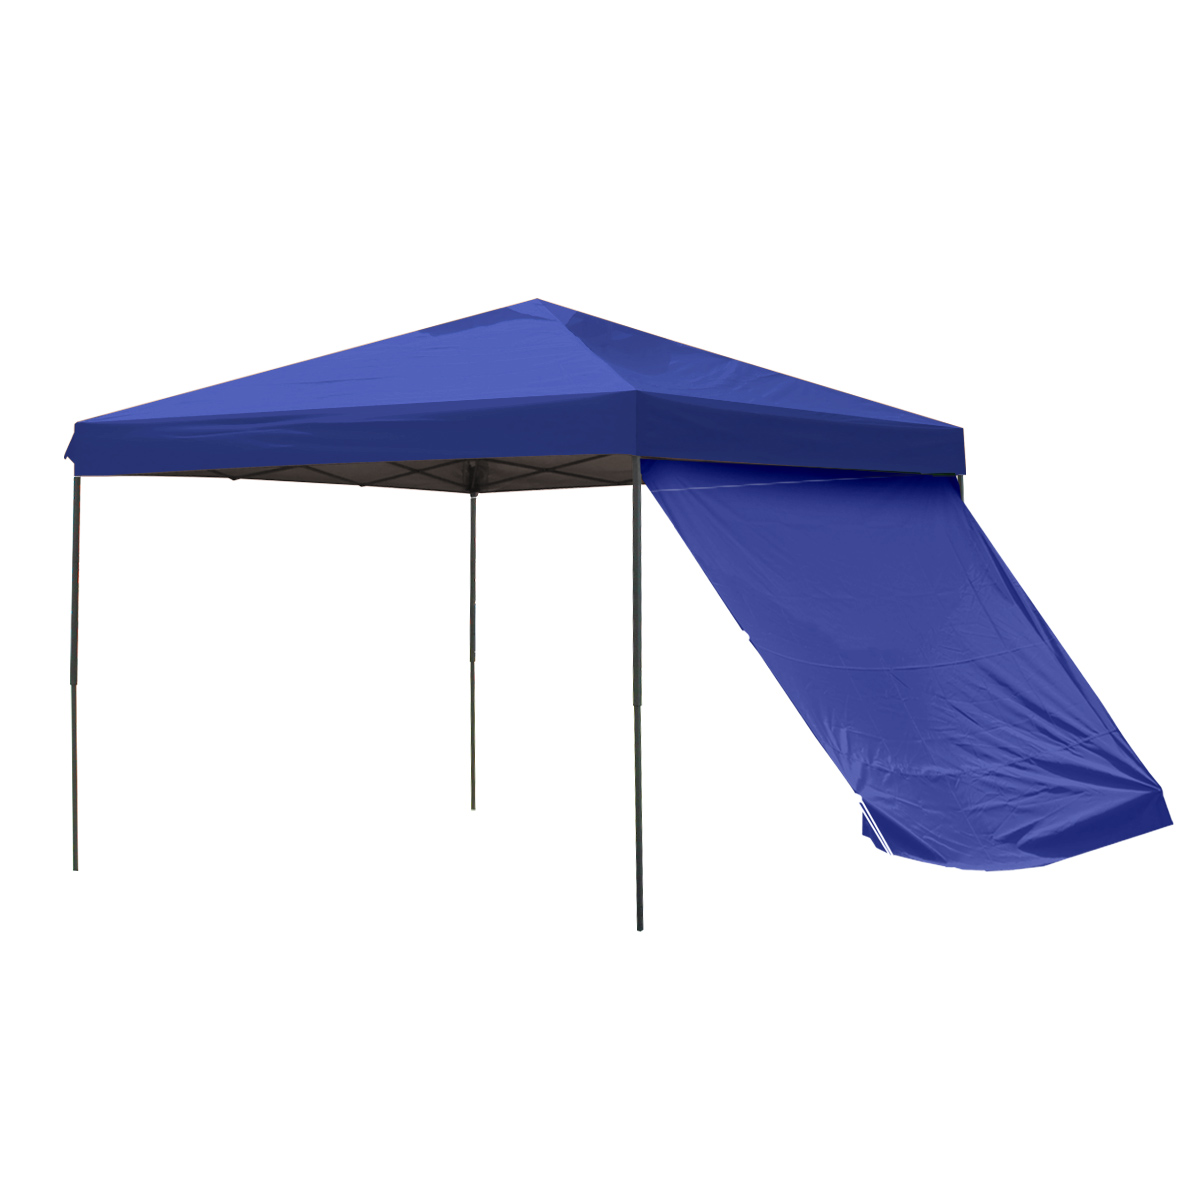 タープテント 3m サイドシート2枚付き 高さ調整可能 テント ワンタッチ サンシェード 軽量 日よけ 耐水 撥水 UVカット キャンプ